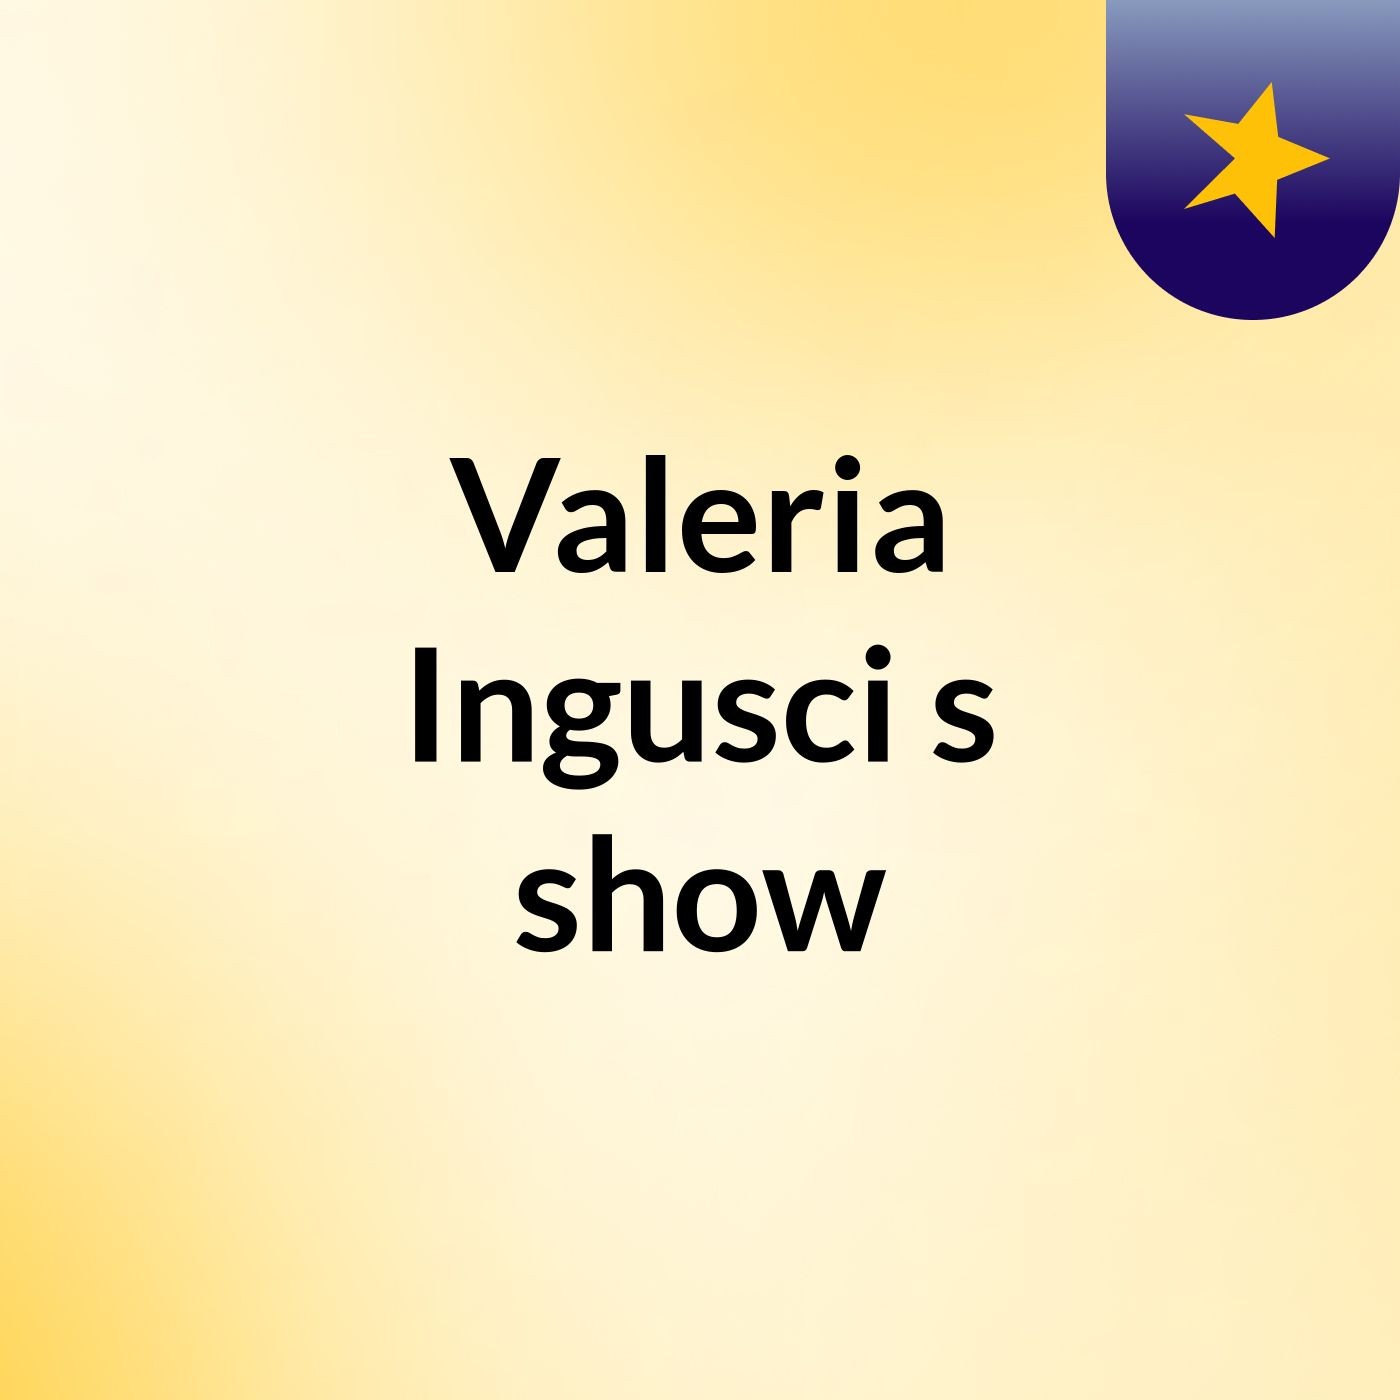 Valeria Ingusci's show